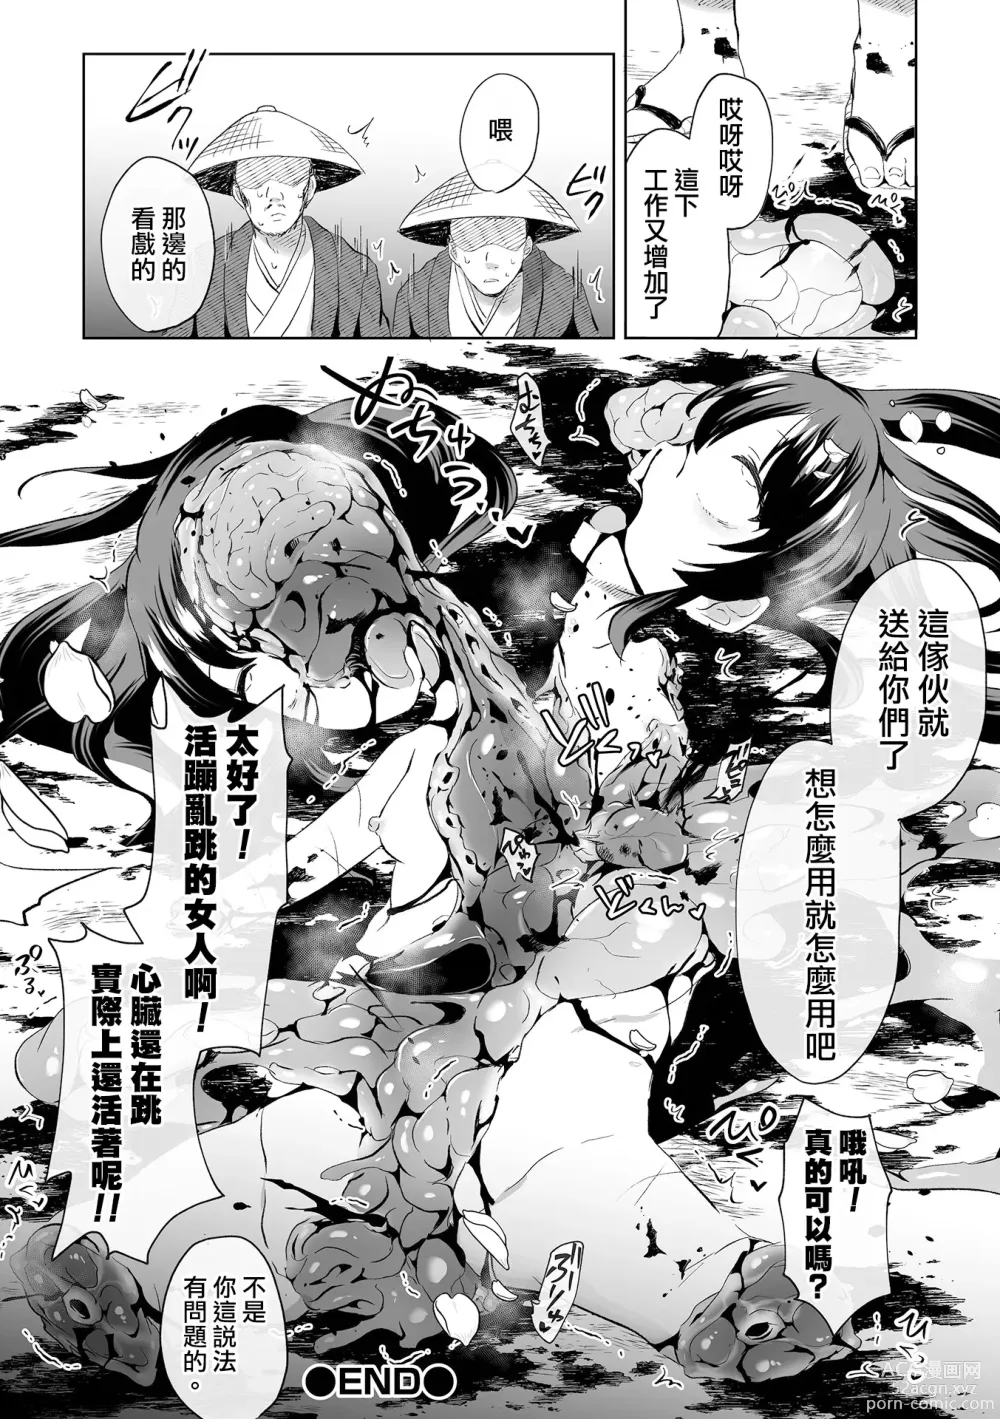 Page 11 of manga Ouka Chiru